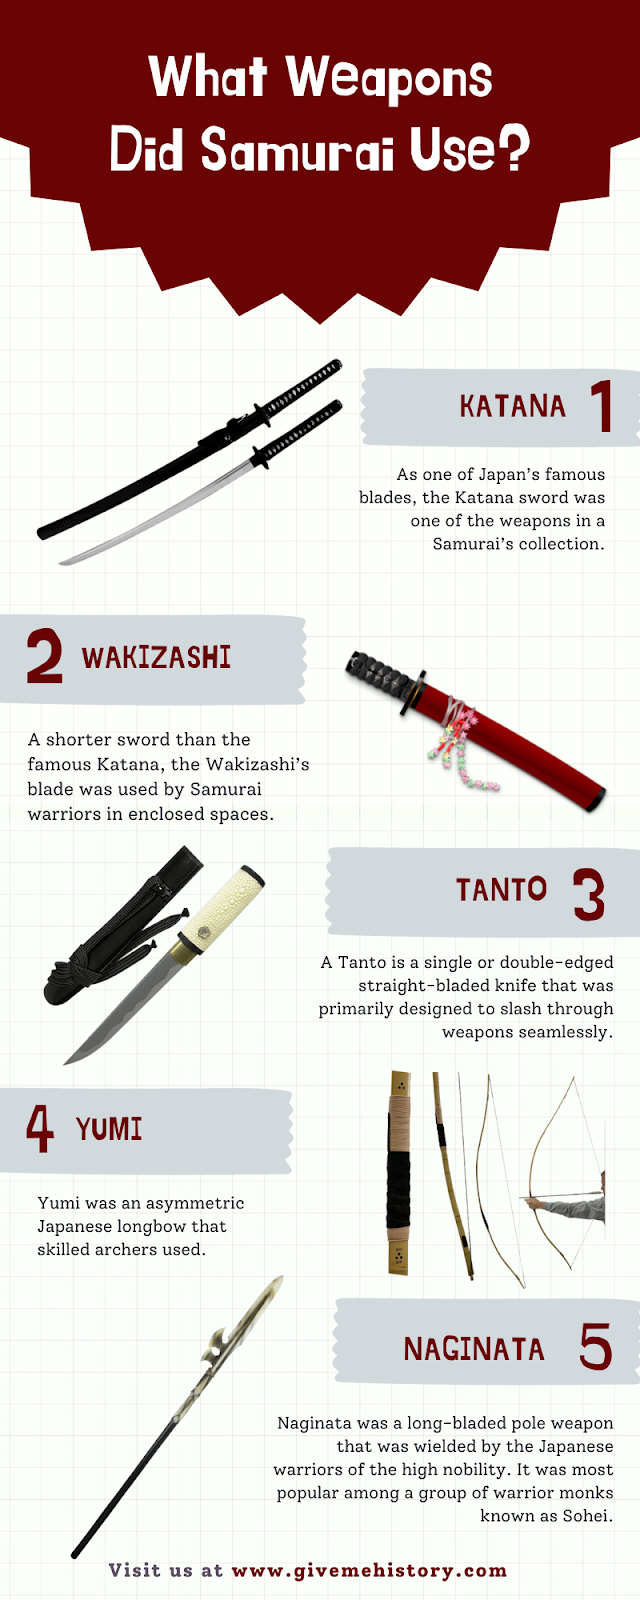 Hokker wapens brûkten Samurai?